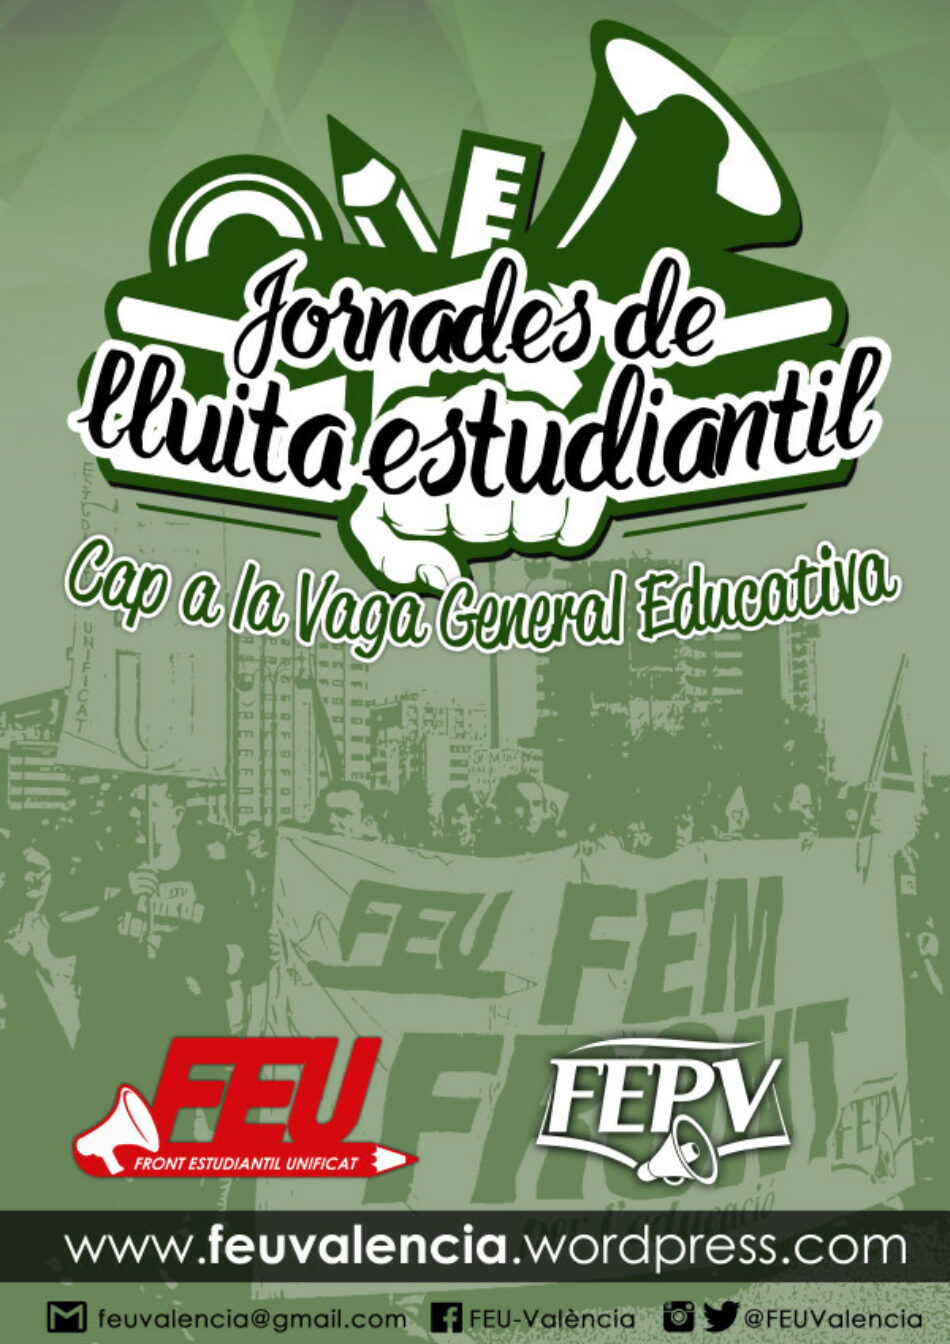 El FEU-València organisa activitats reivindicatives per fer front als atacs a l’ensenyament públic